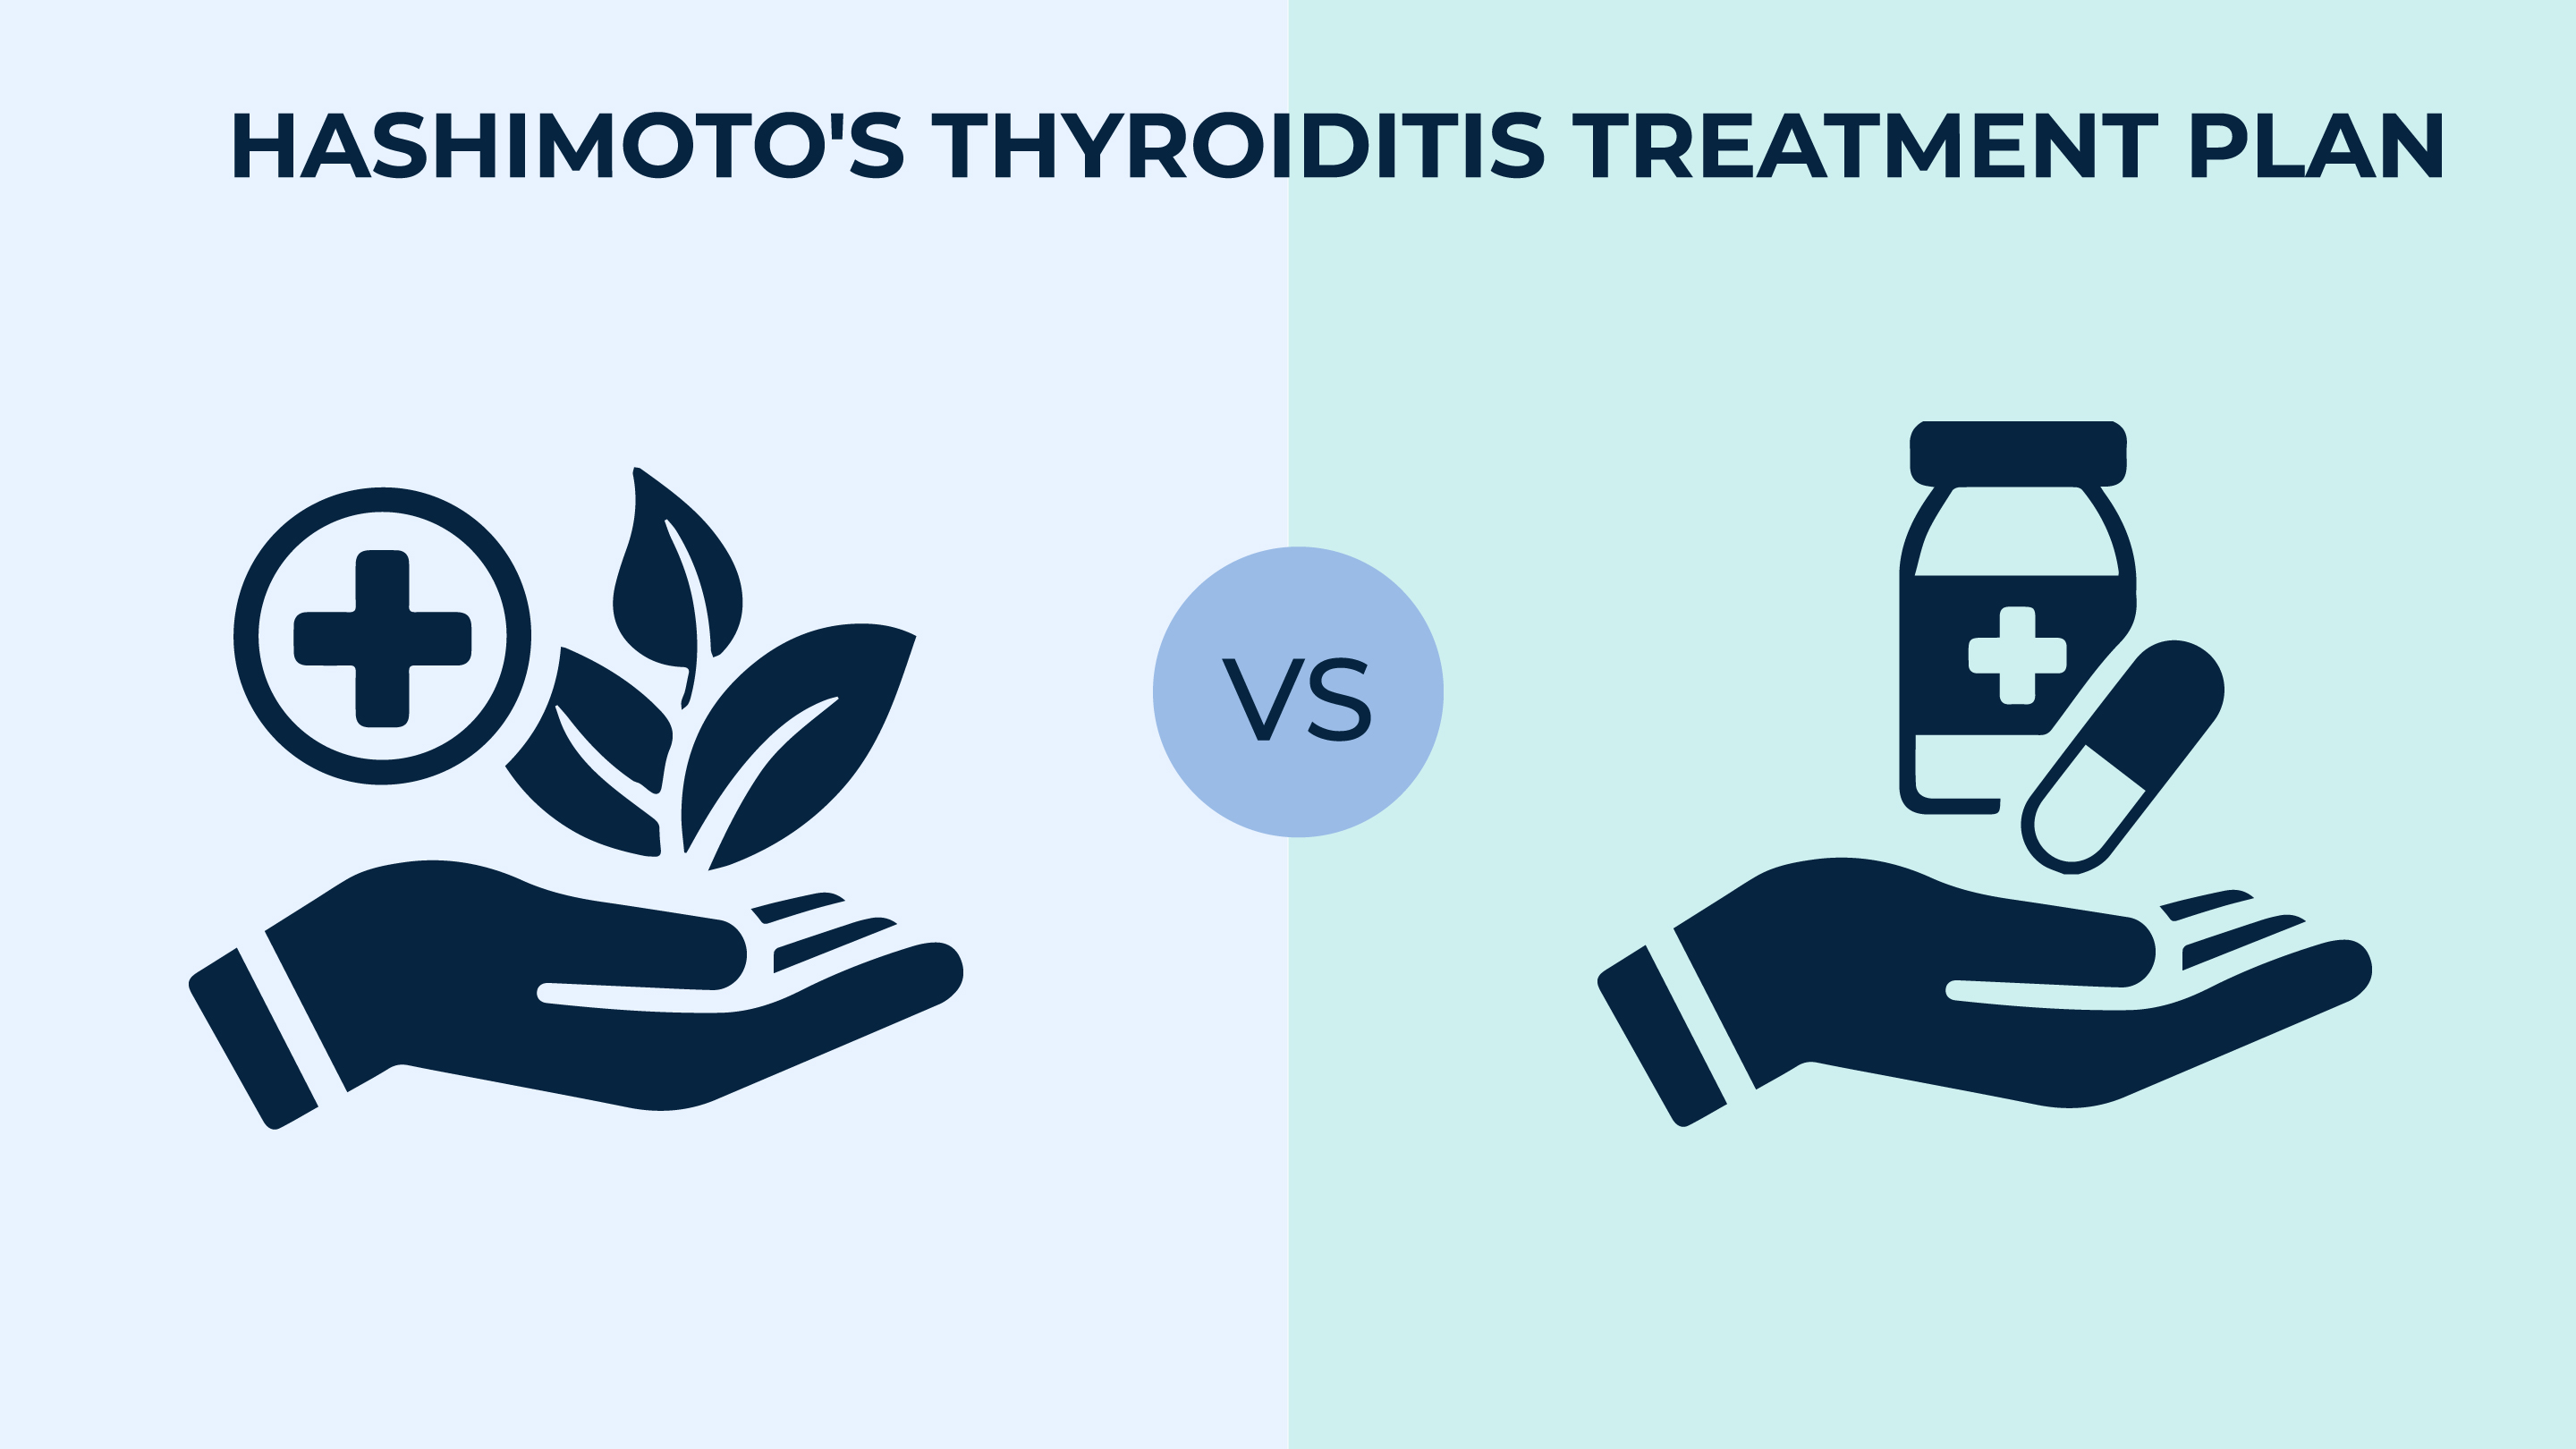 Hashimoto's thyroiditis treatment